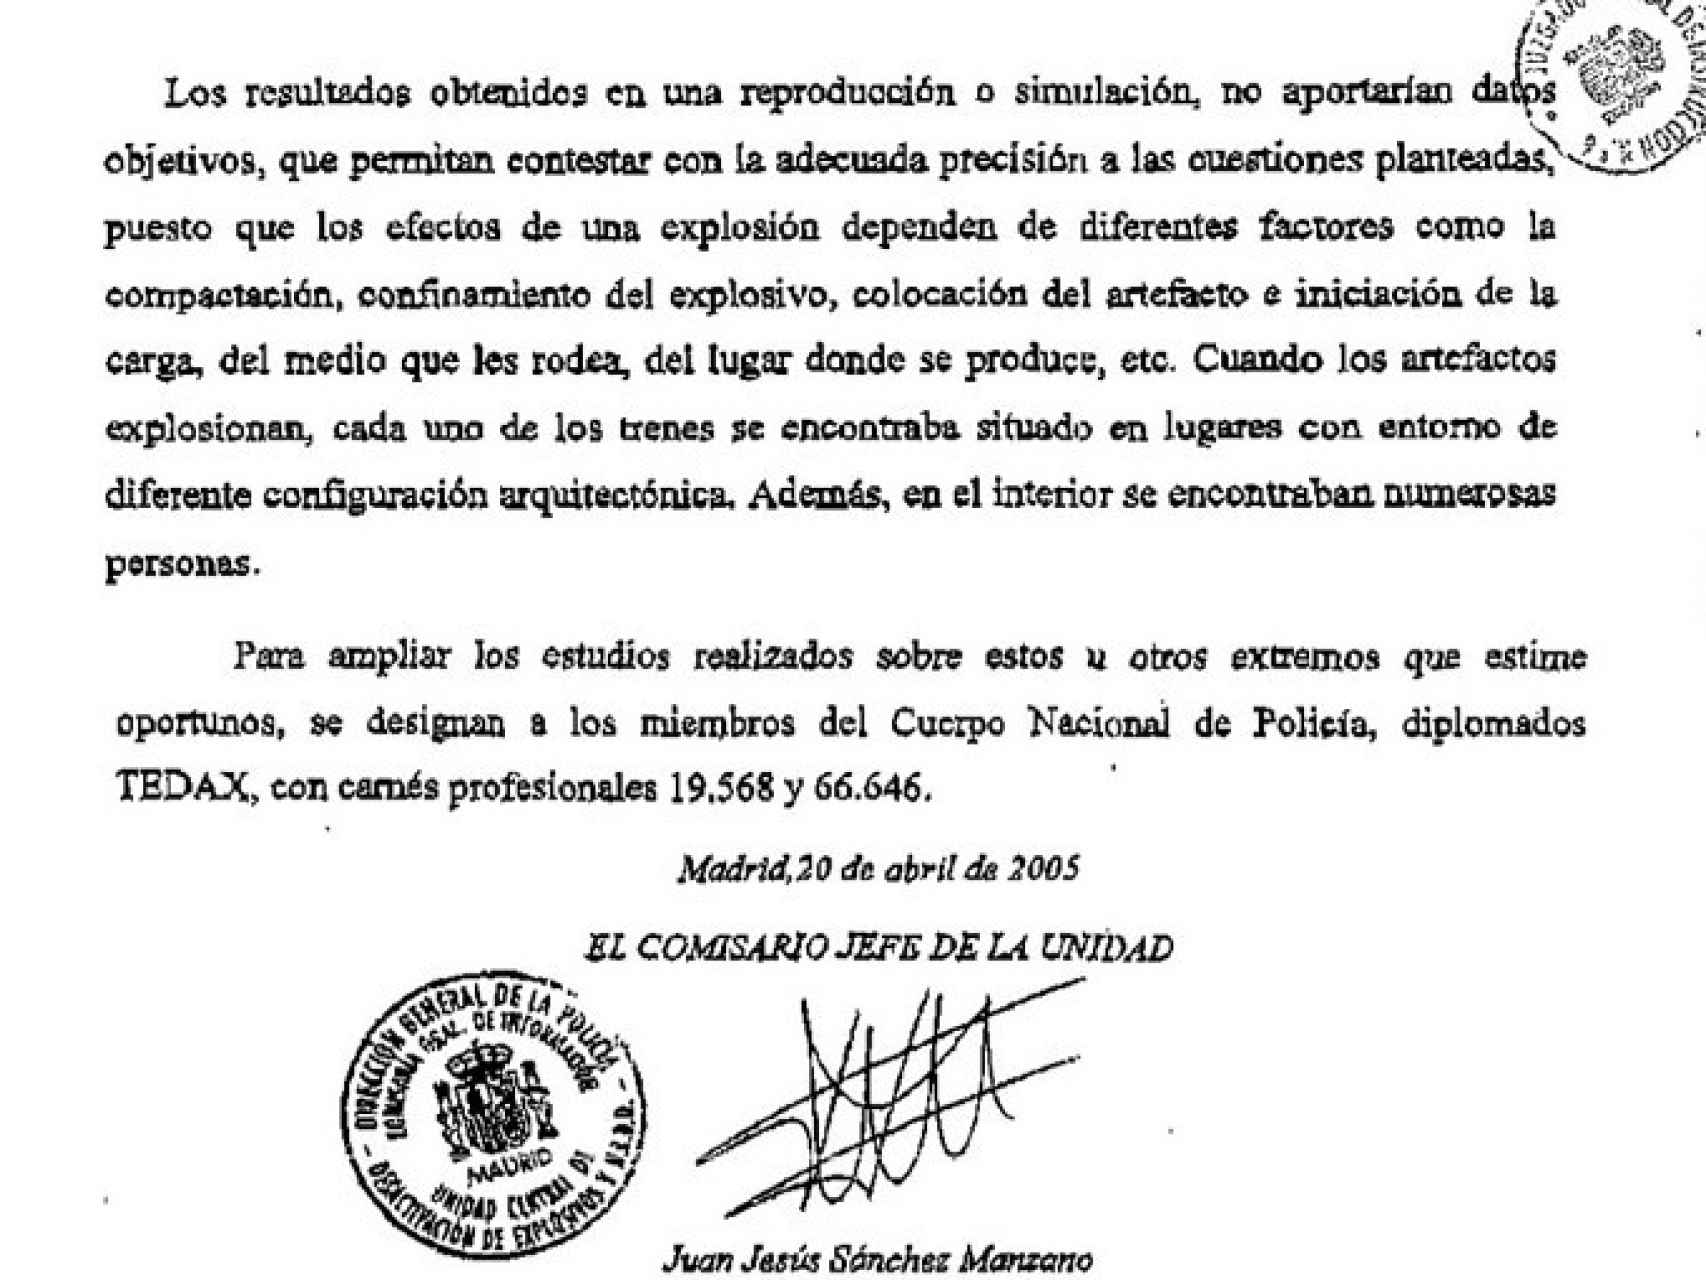 Fragmento de la respuesta de Sánchez Manzano al requerimiento del juez: La reproducción de lo ocurrido “no aportaría datos objetivos”.